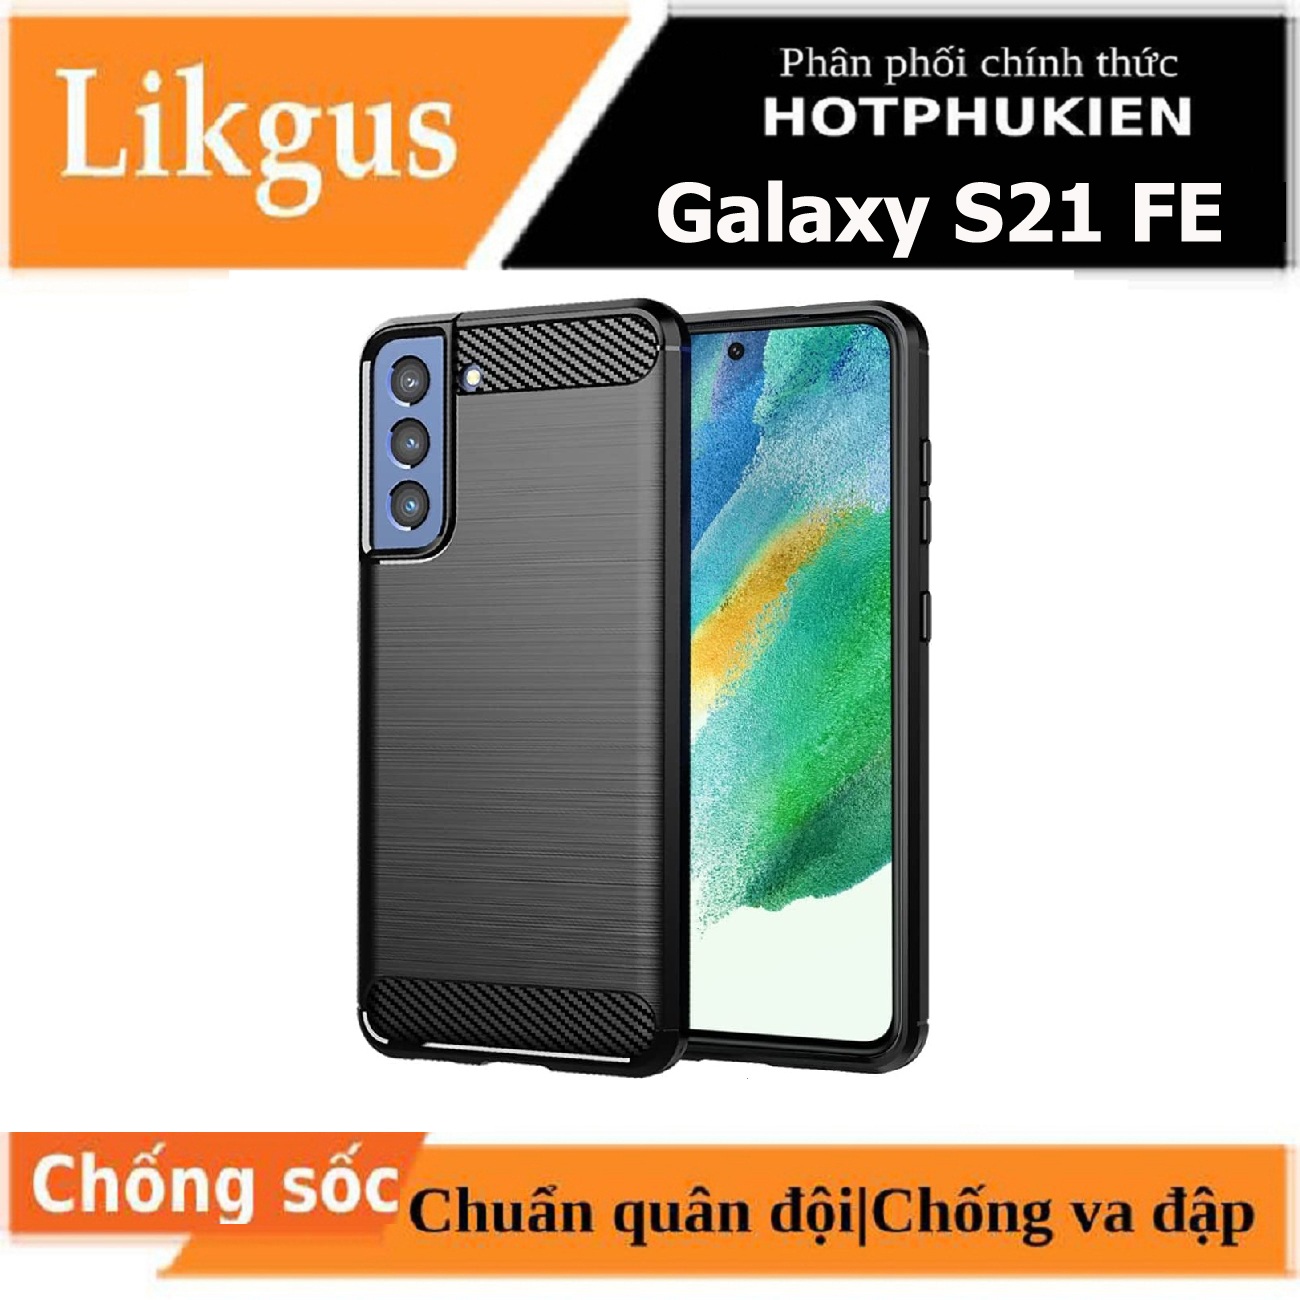 Ốp lưng chống sốc cho Samsung Galaxy S21 FE hiệu Likgus vân kim loại , chống sốc chuẩn quân đội, chống va đập - hàng nhập khẩu